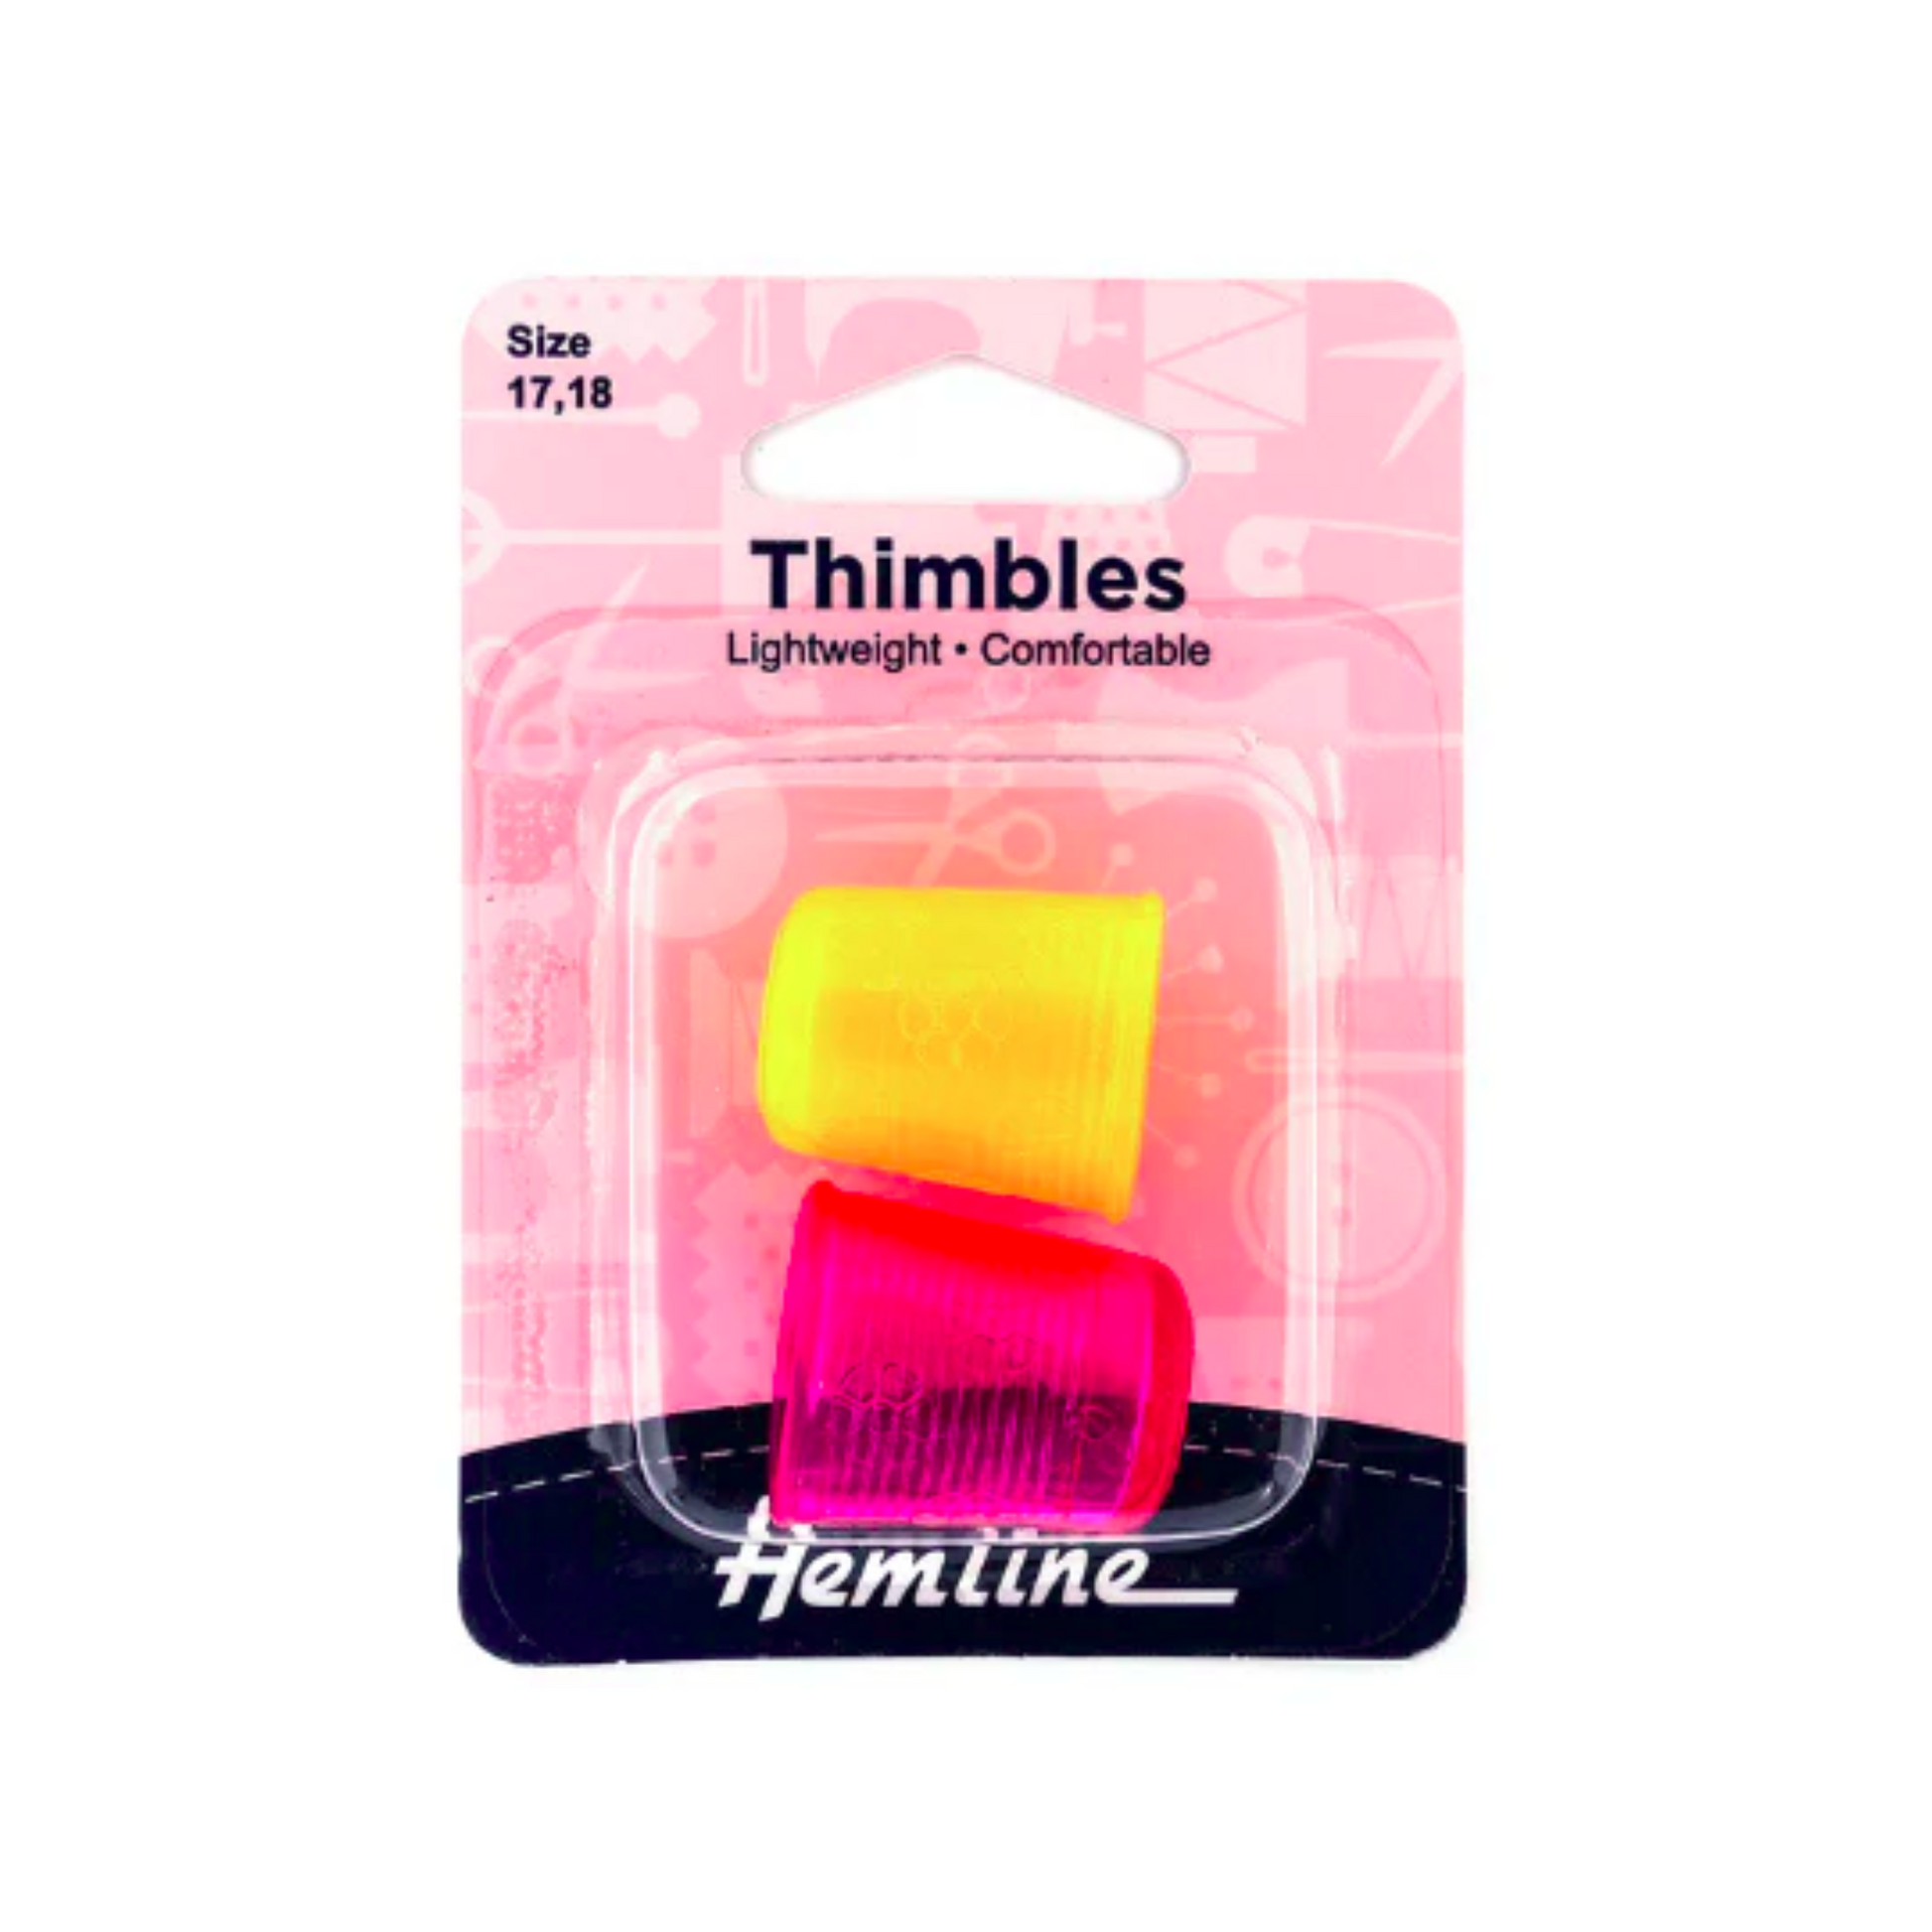 Hemline thimble - Multi color - Front view